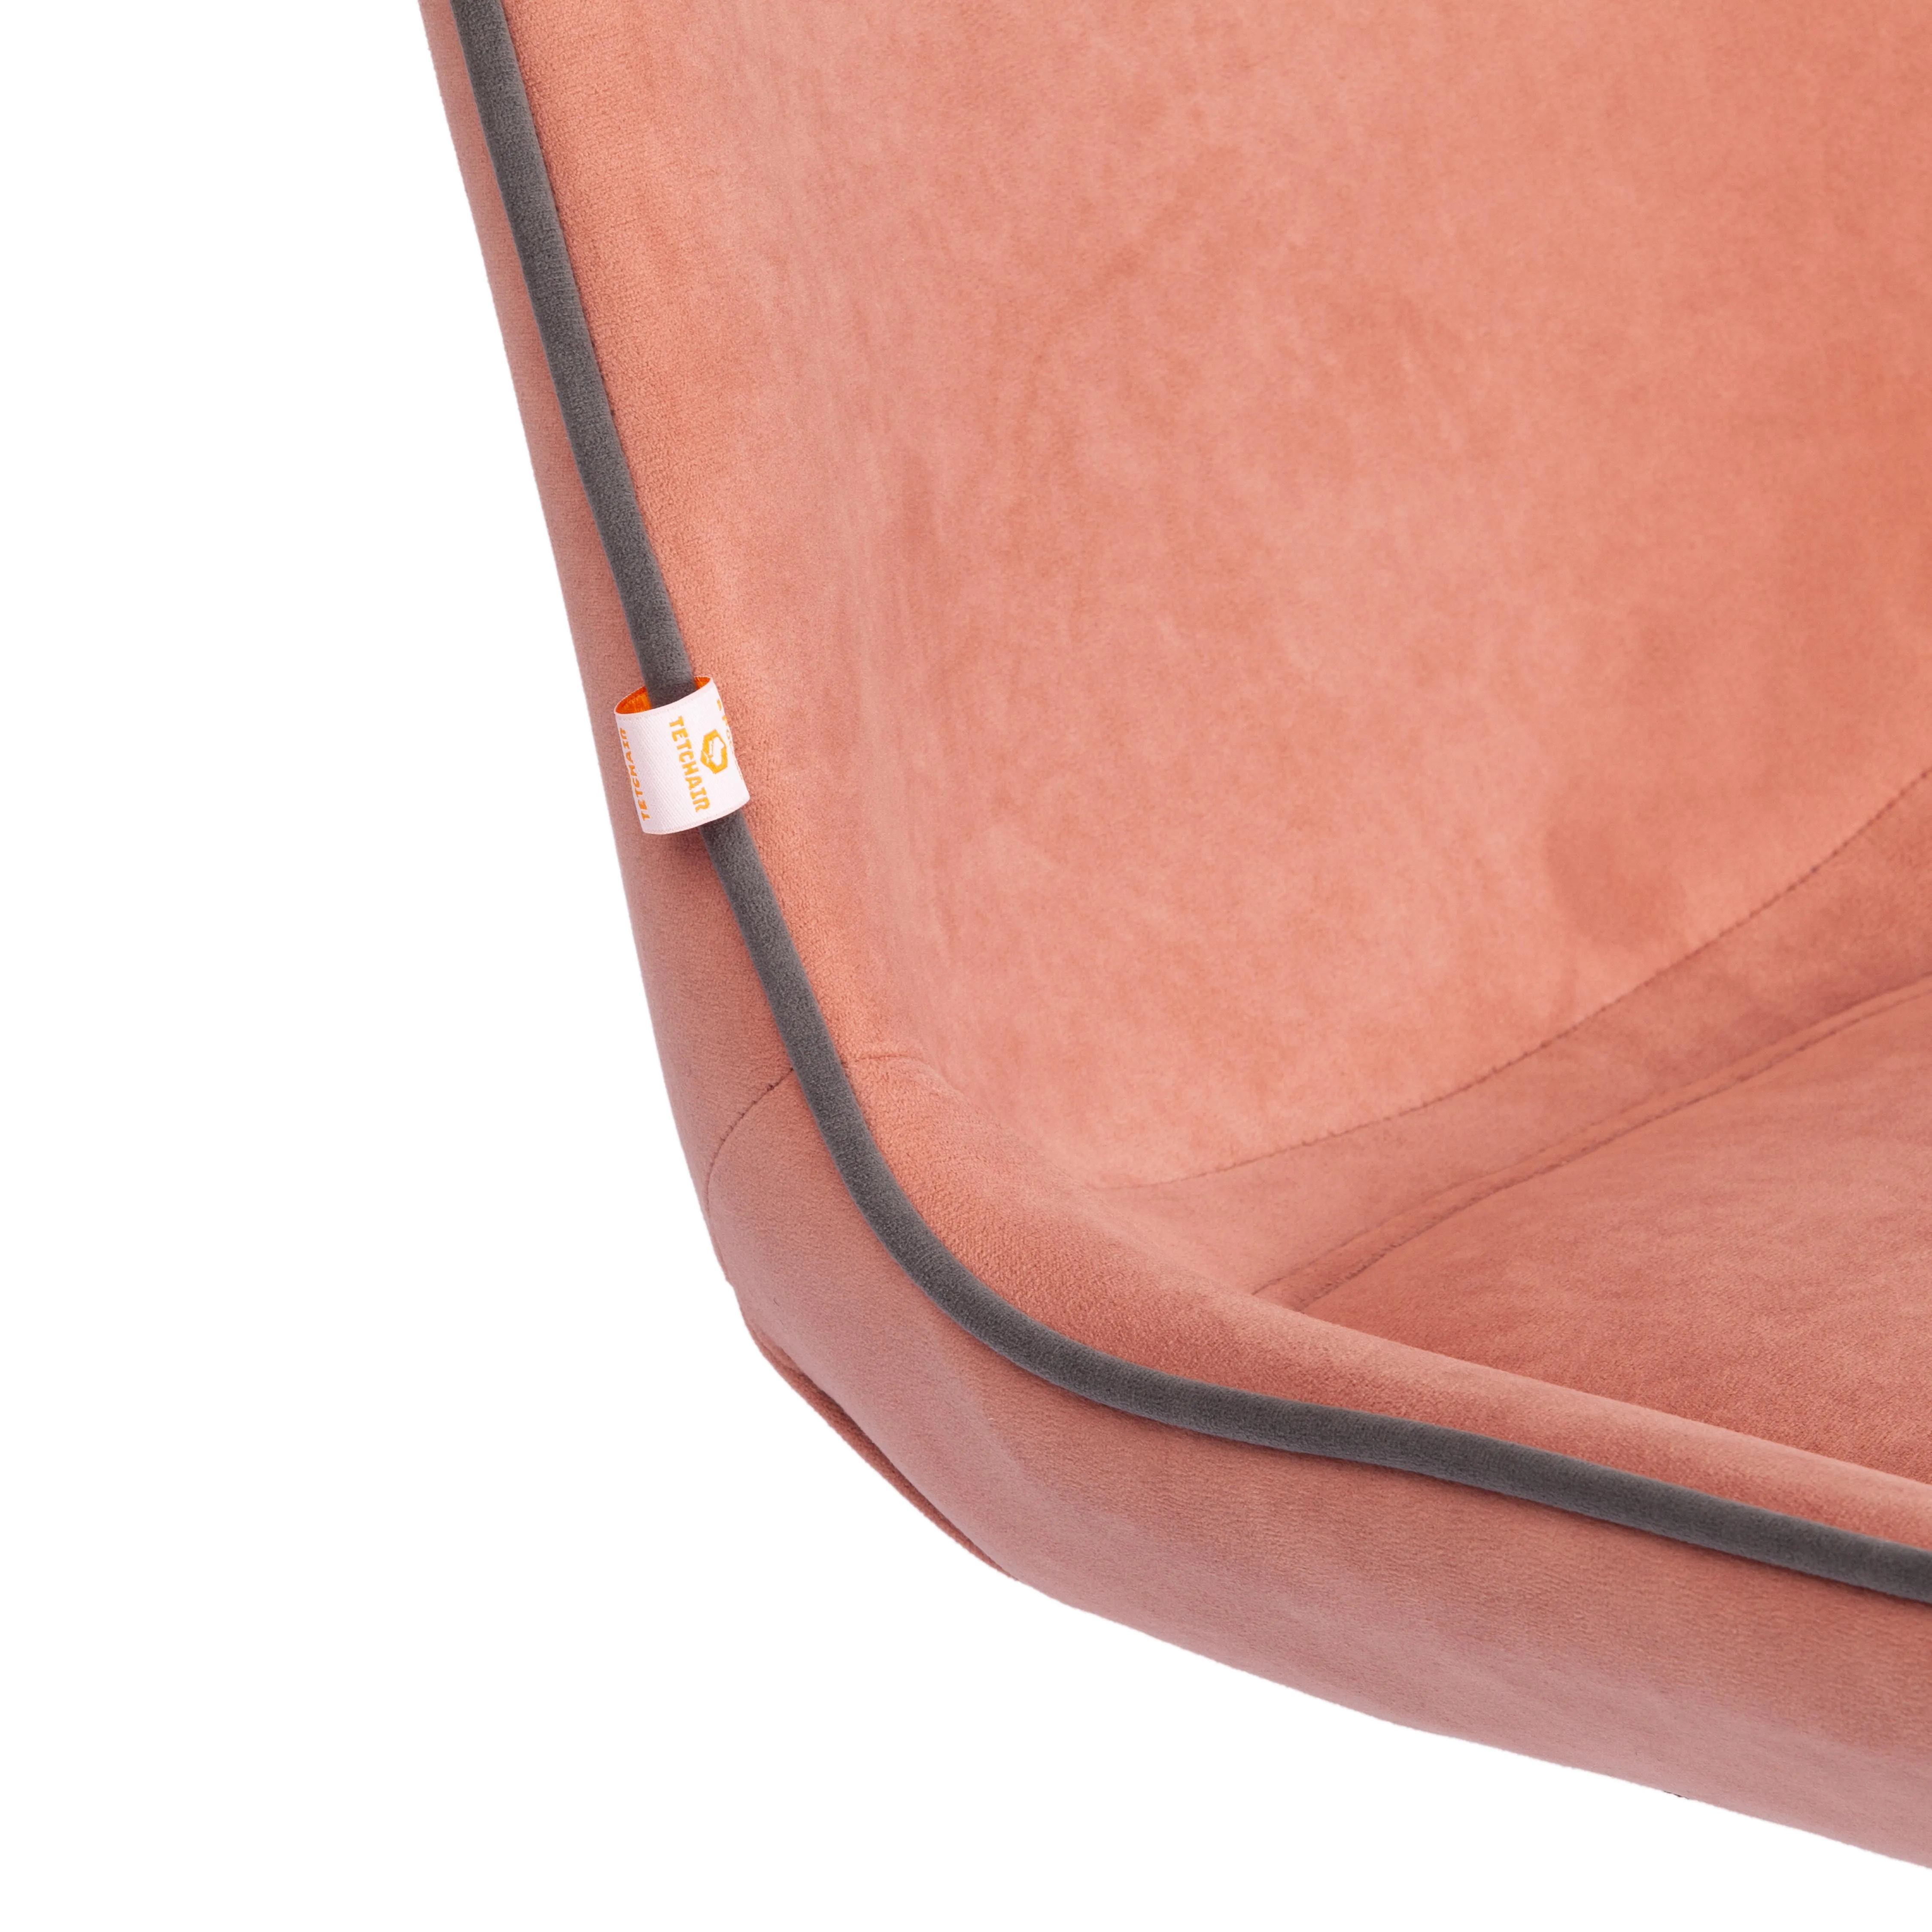 Кресло офисное STYLE флок розовый